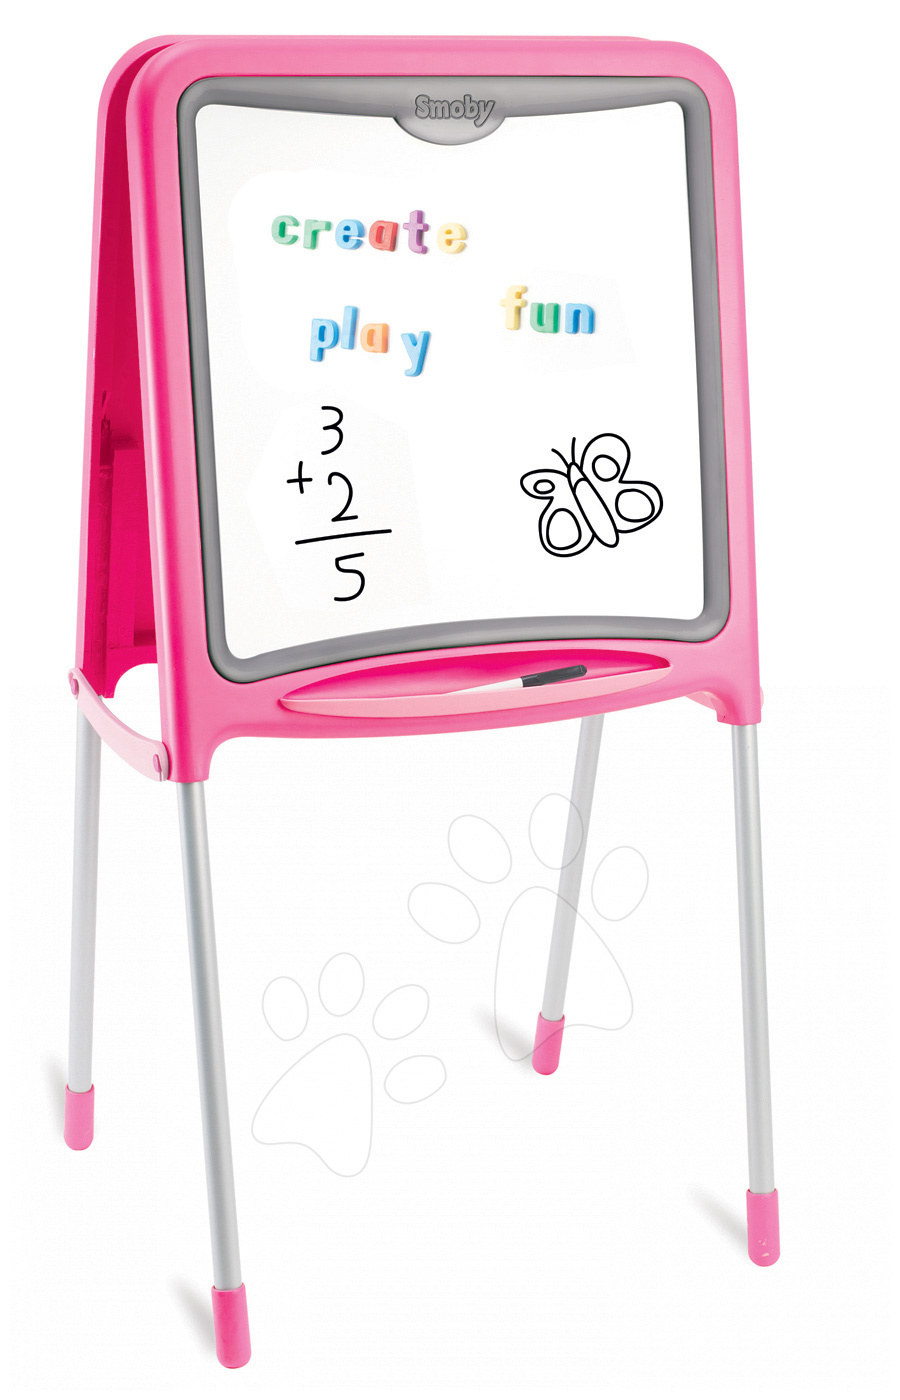 Školské tabule - Magnetická tabuľa Smoby obojstranná s kovovou konštrukciou a 59 doplnkami ružová